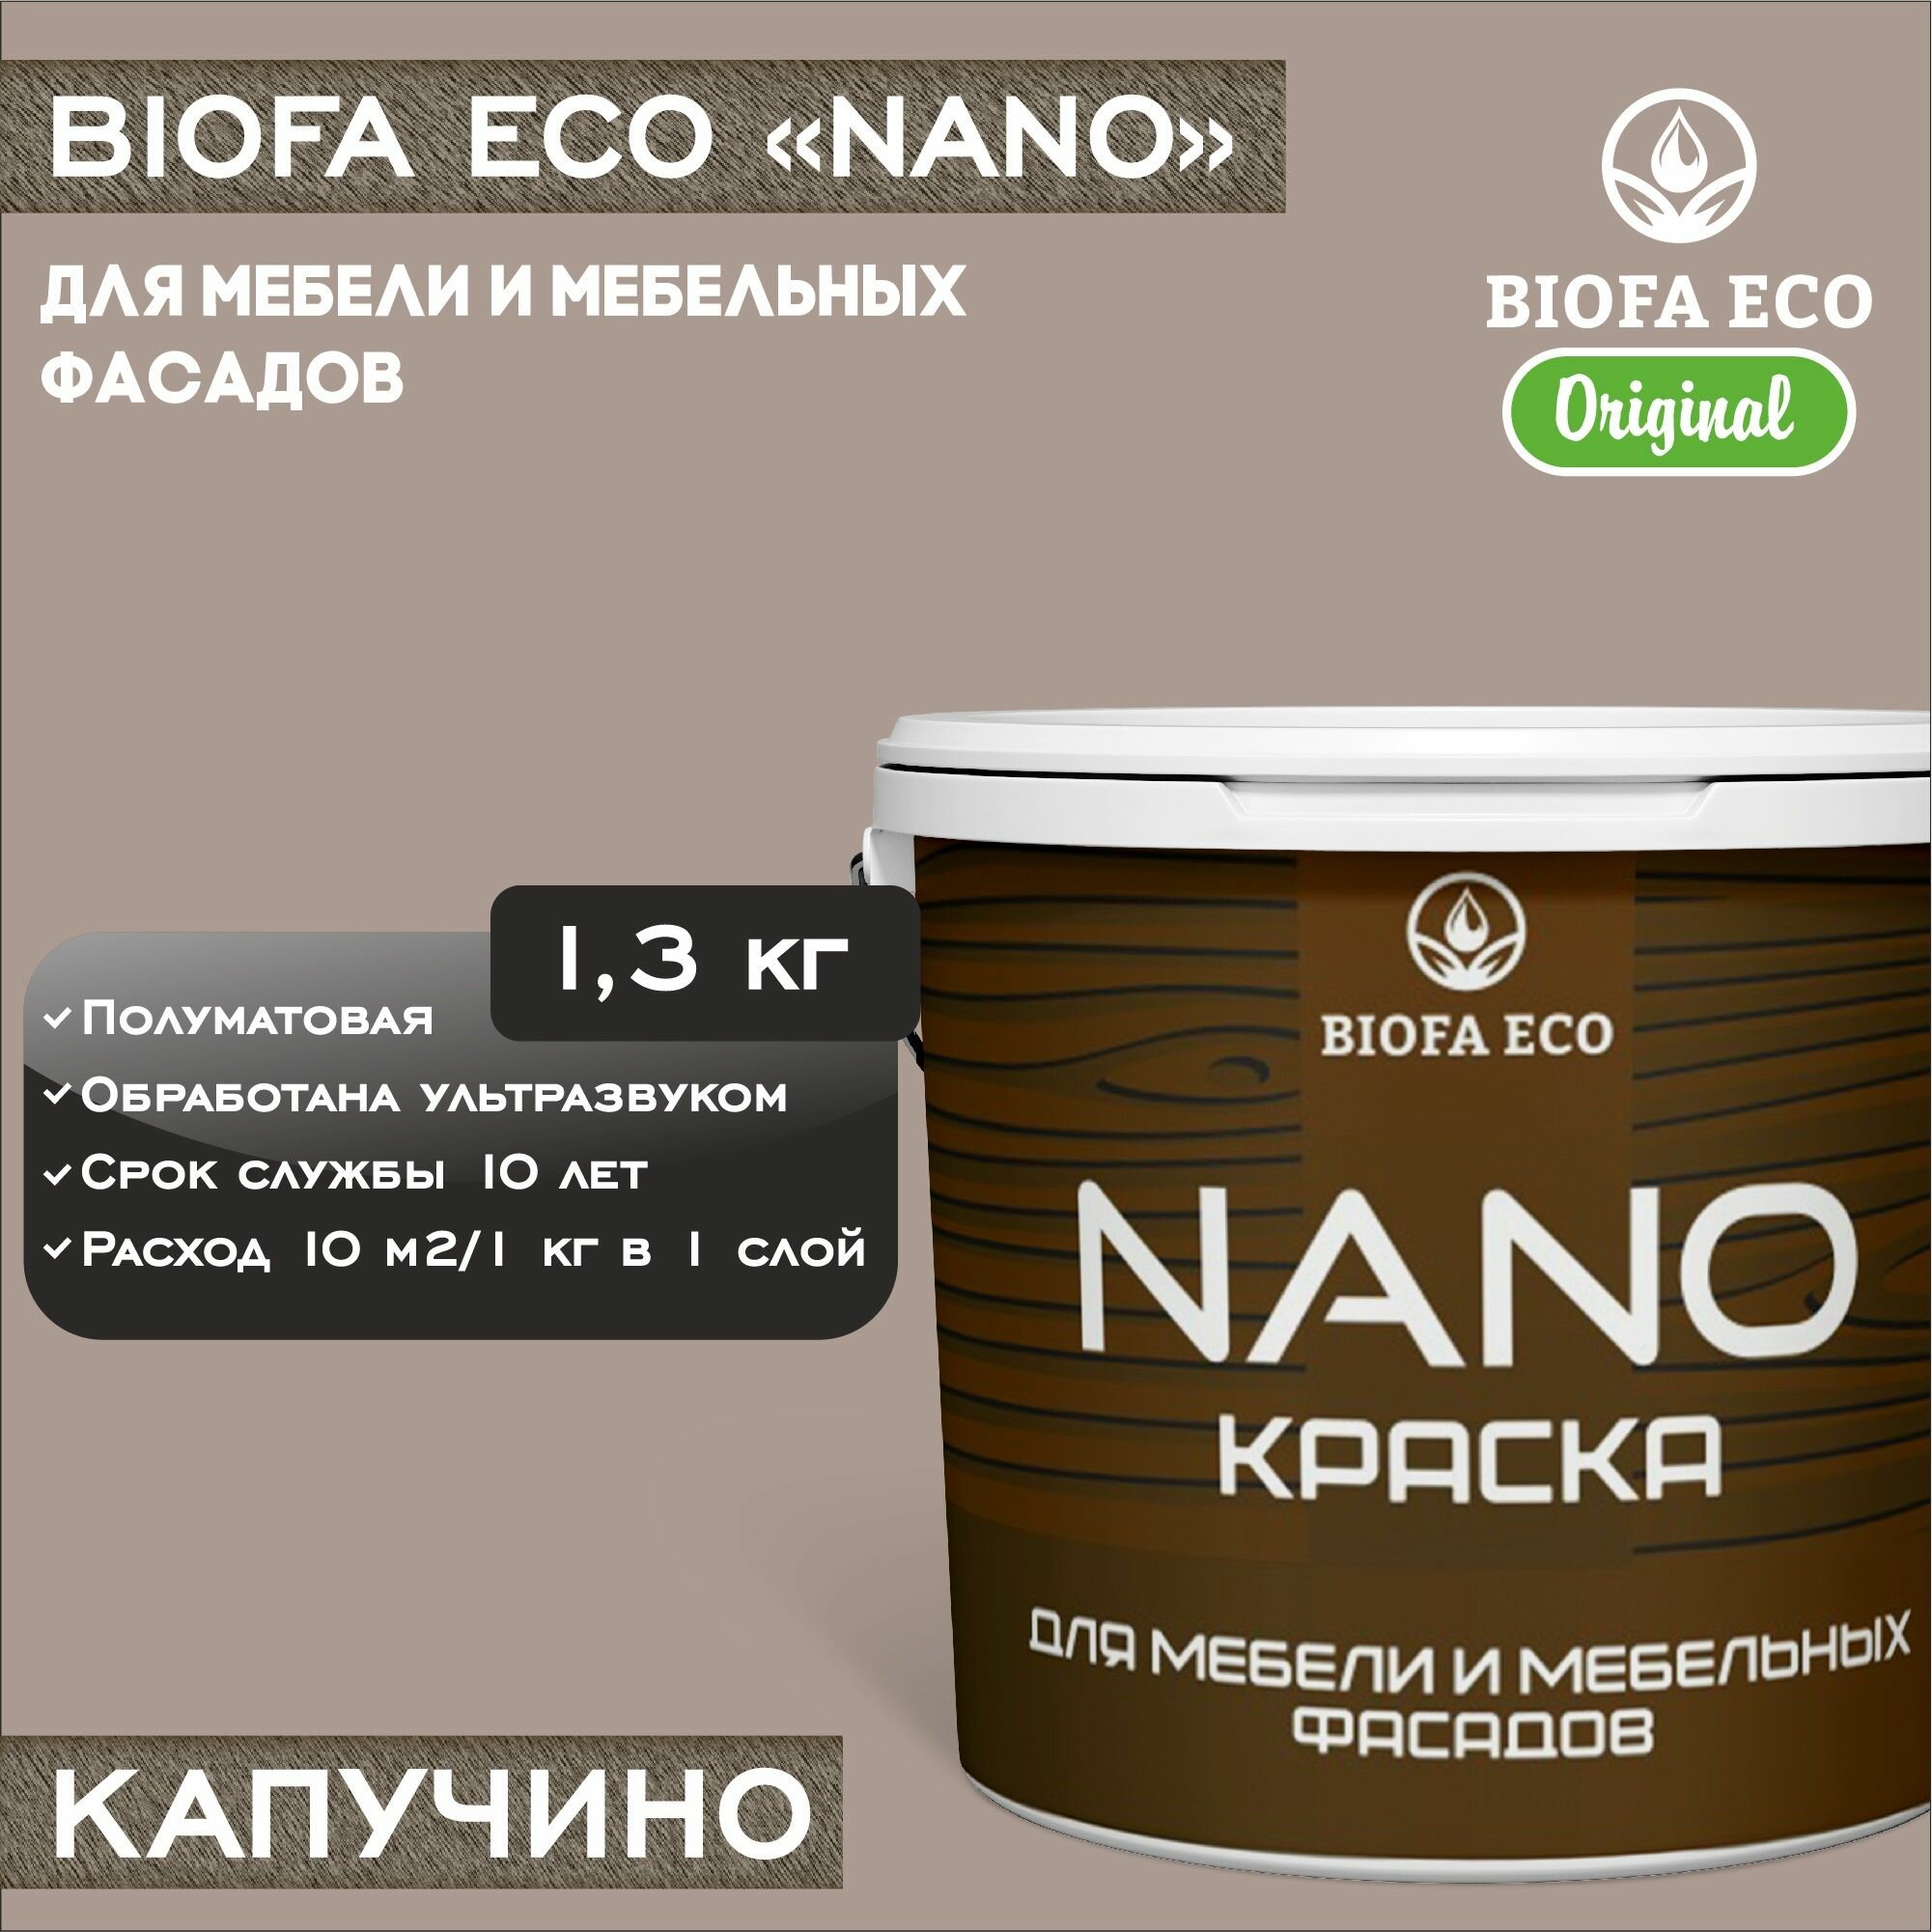 Краска BIOFA ECO NANO для мебели и мебельных фасадов, укрывистая, полуматовая, цвет капучино, 1,3 кг